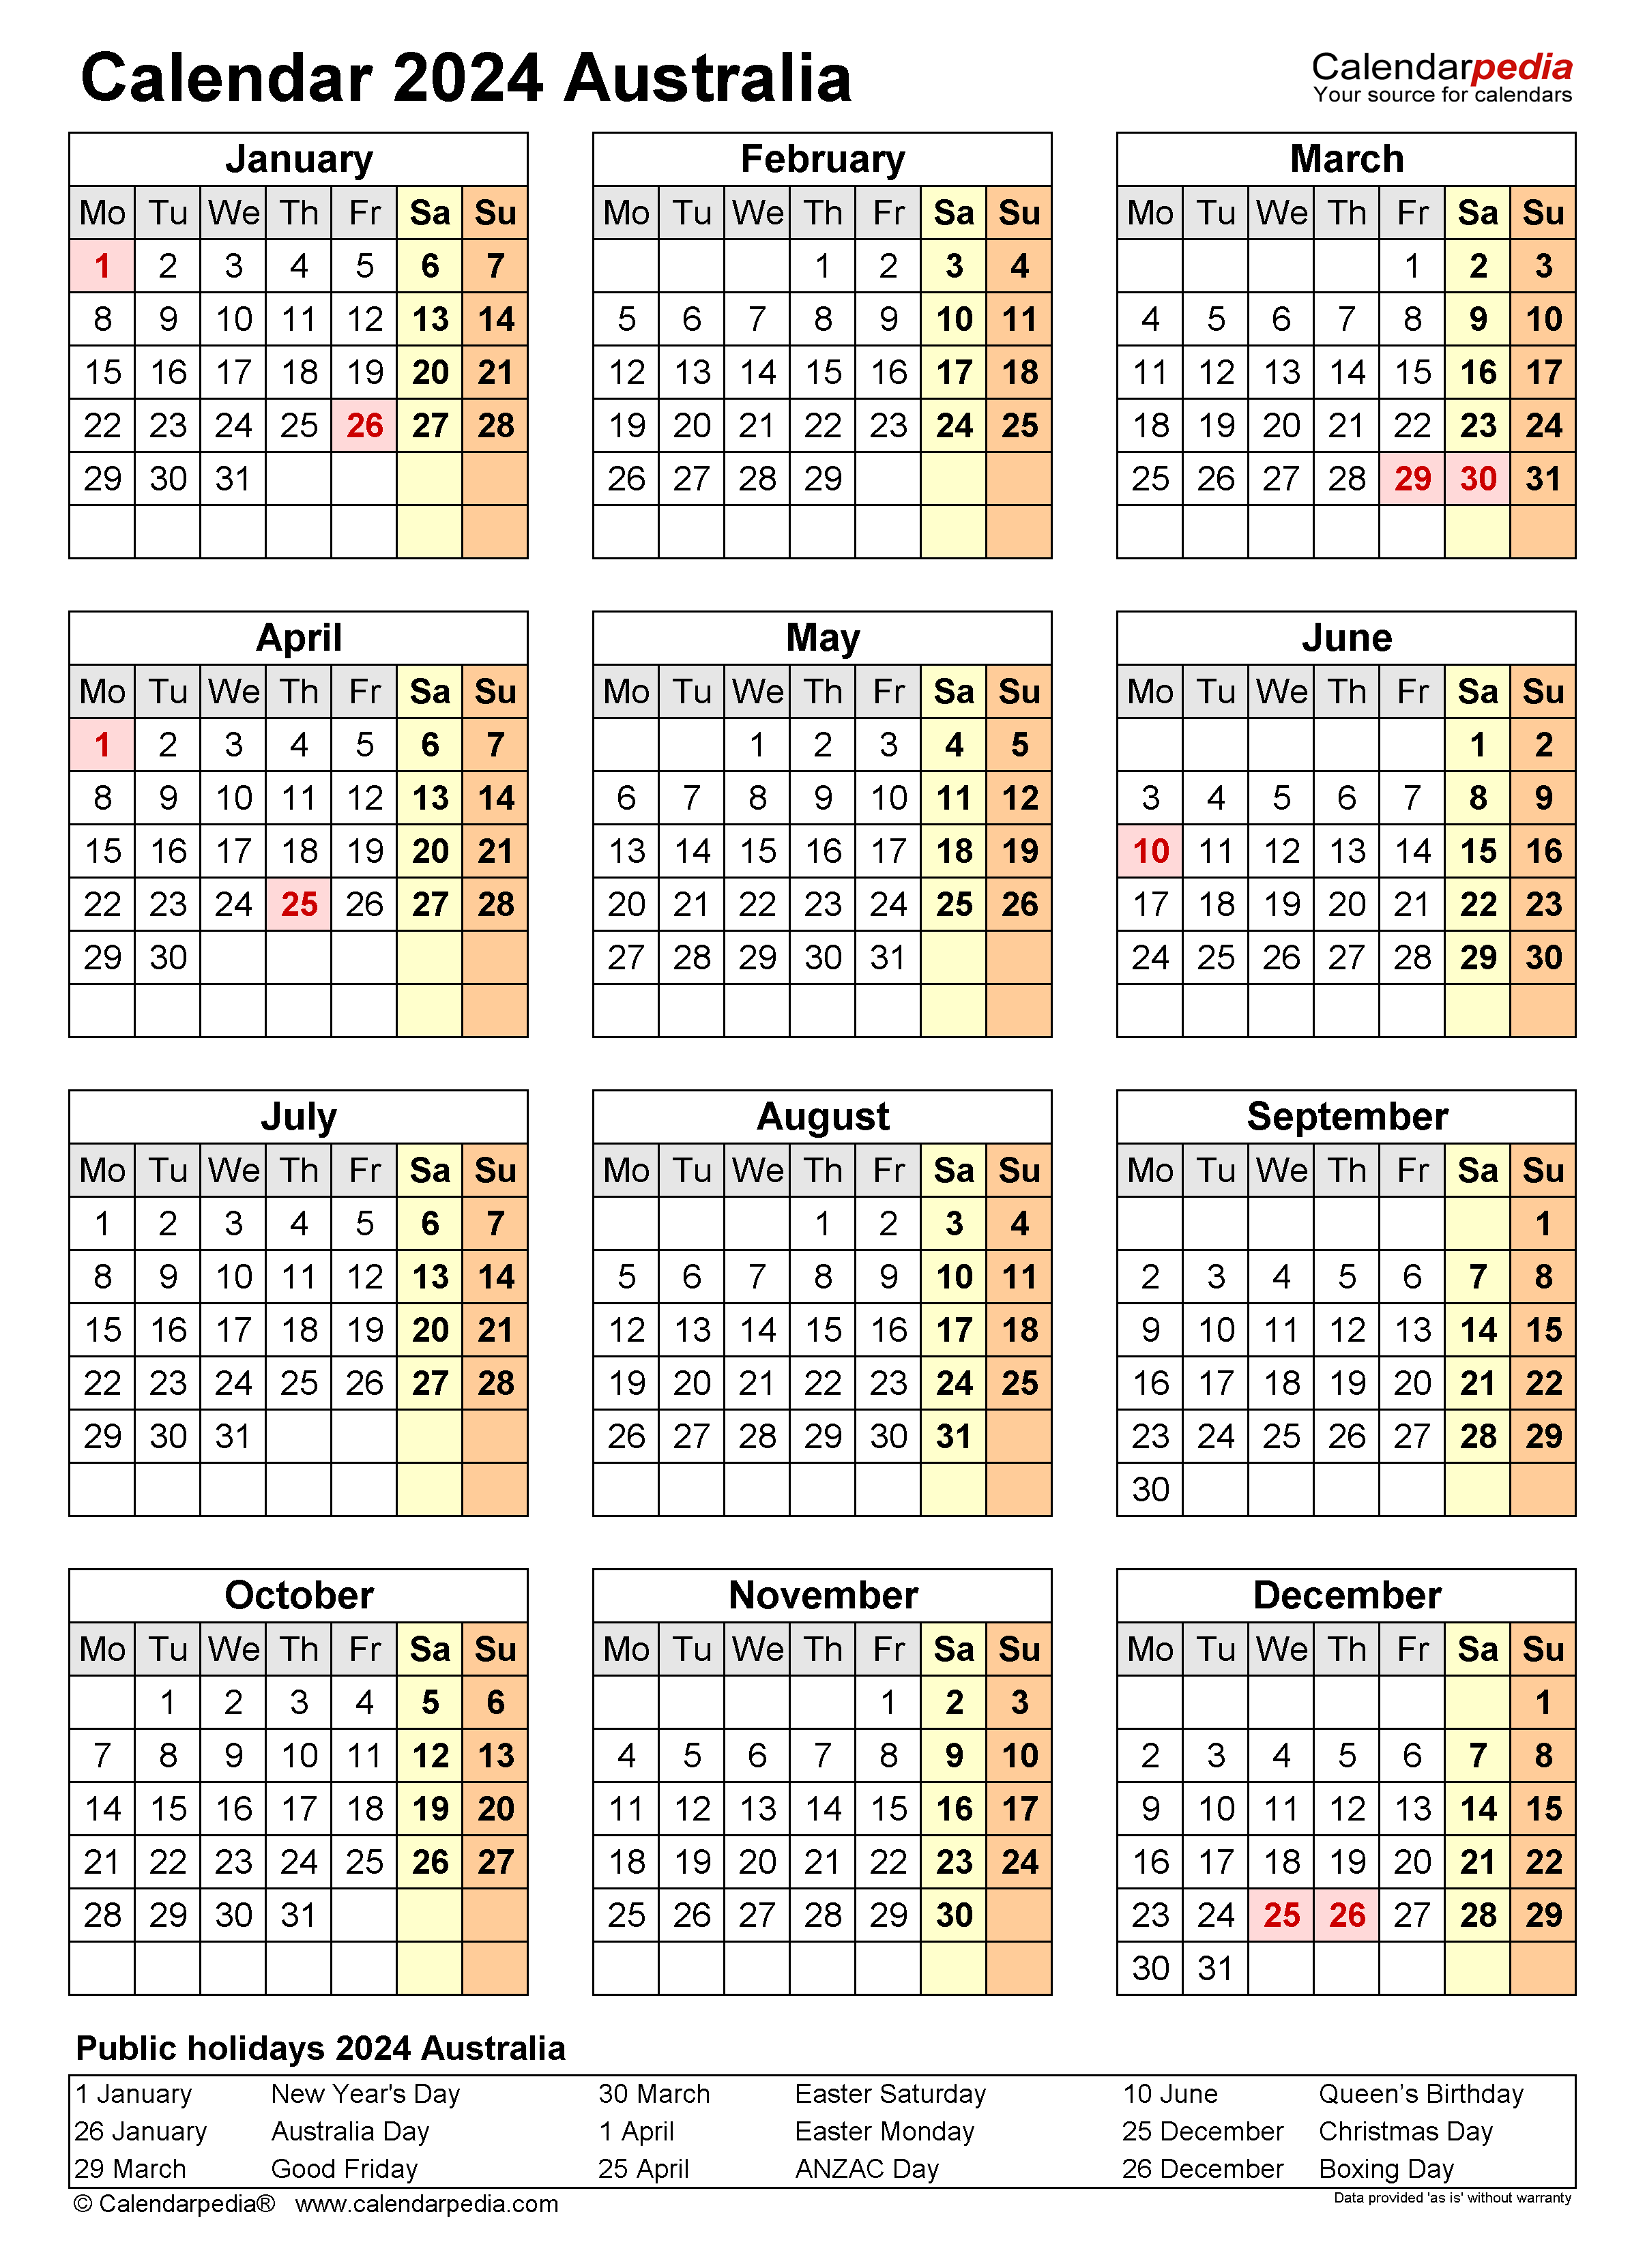 2024 Vacation Calendar 2024 Calendar Printable